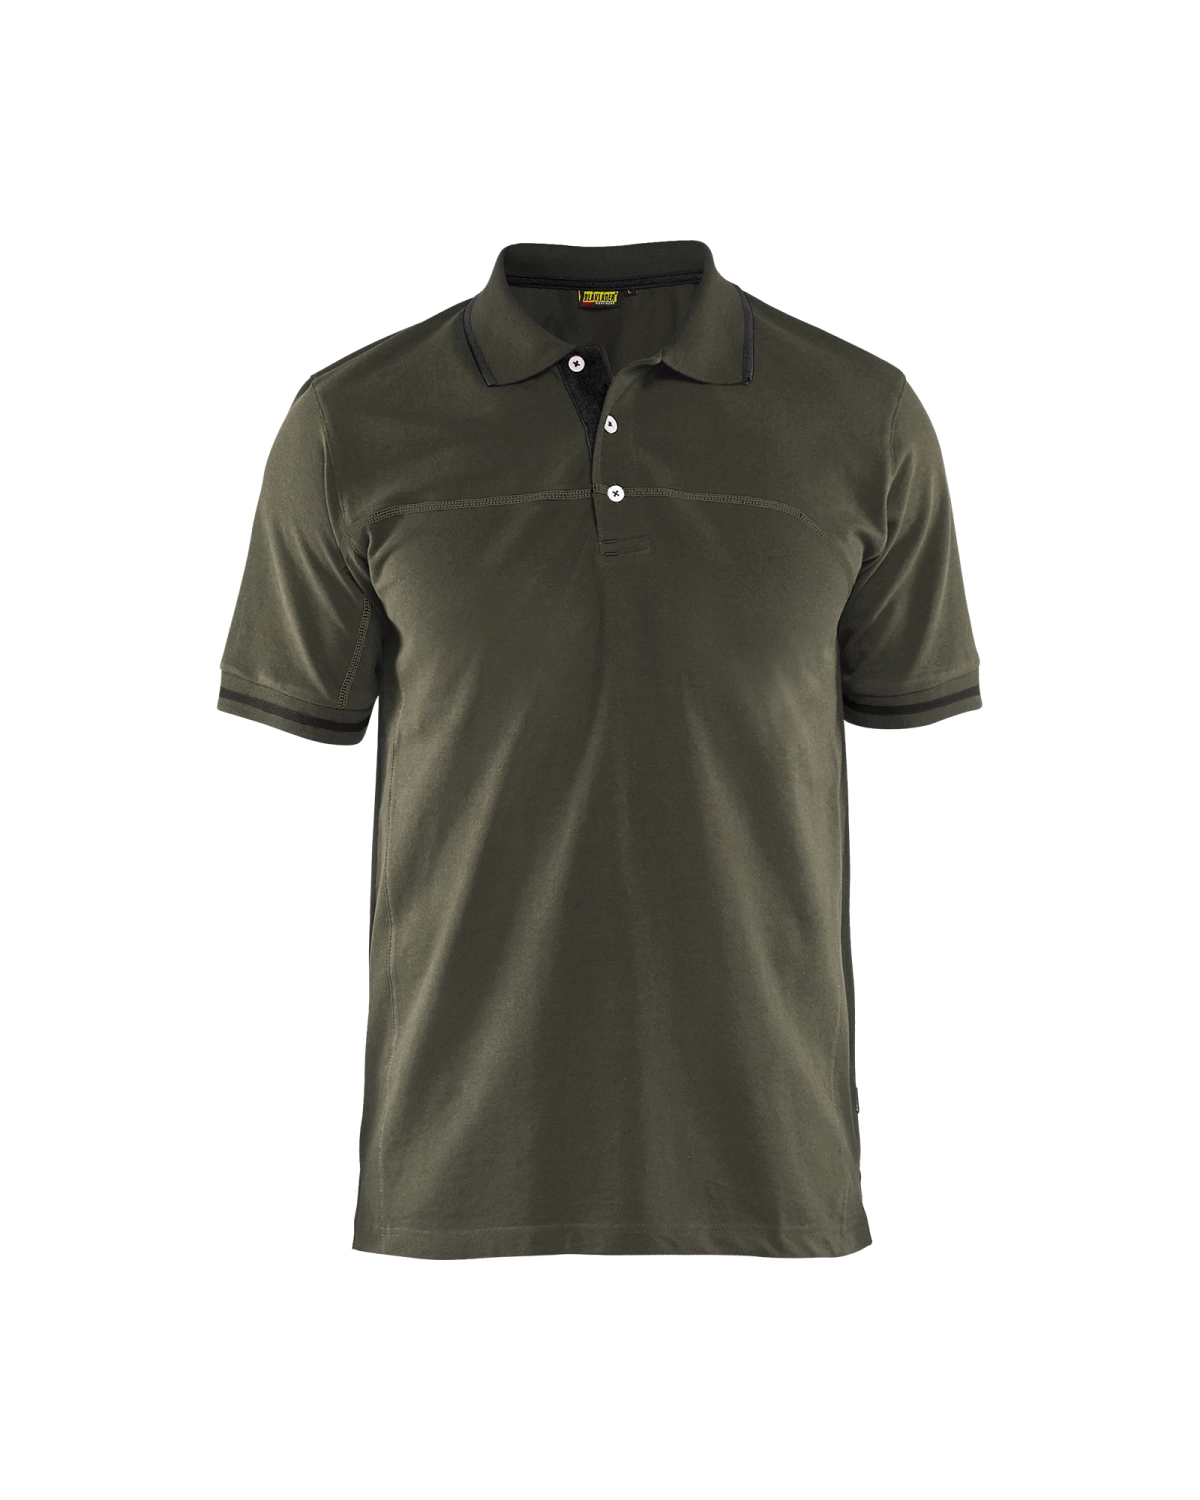 Blåkläder 3389 Poloshirt - groen/zwart - L-image